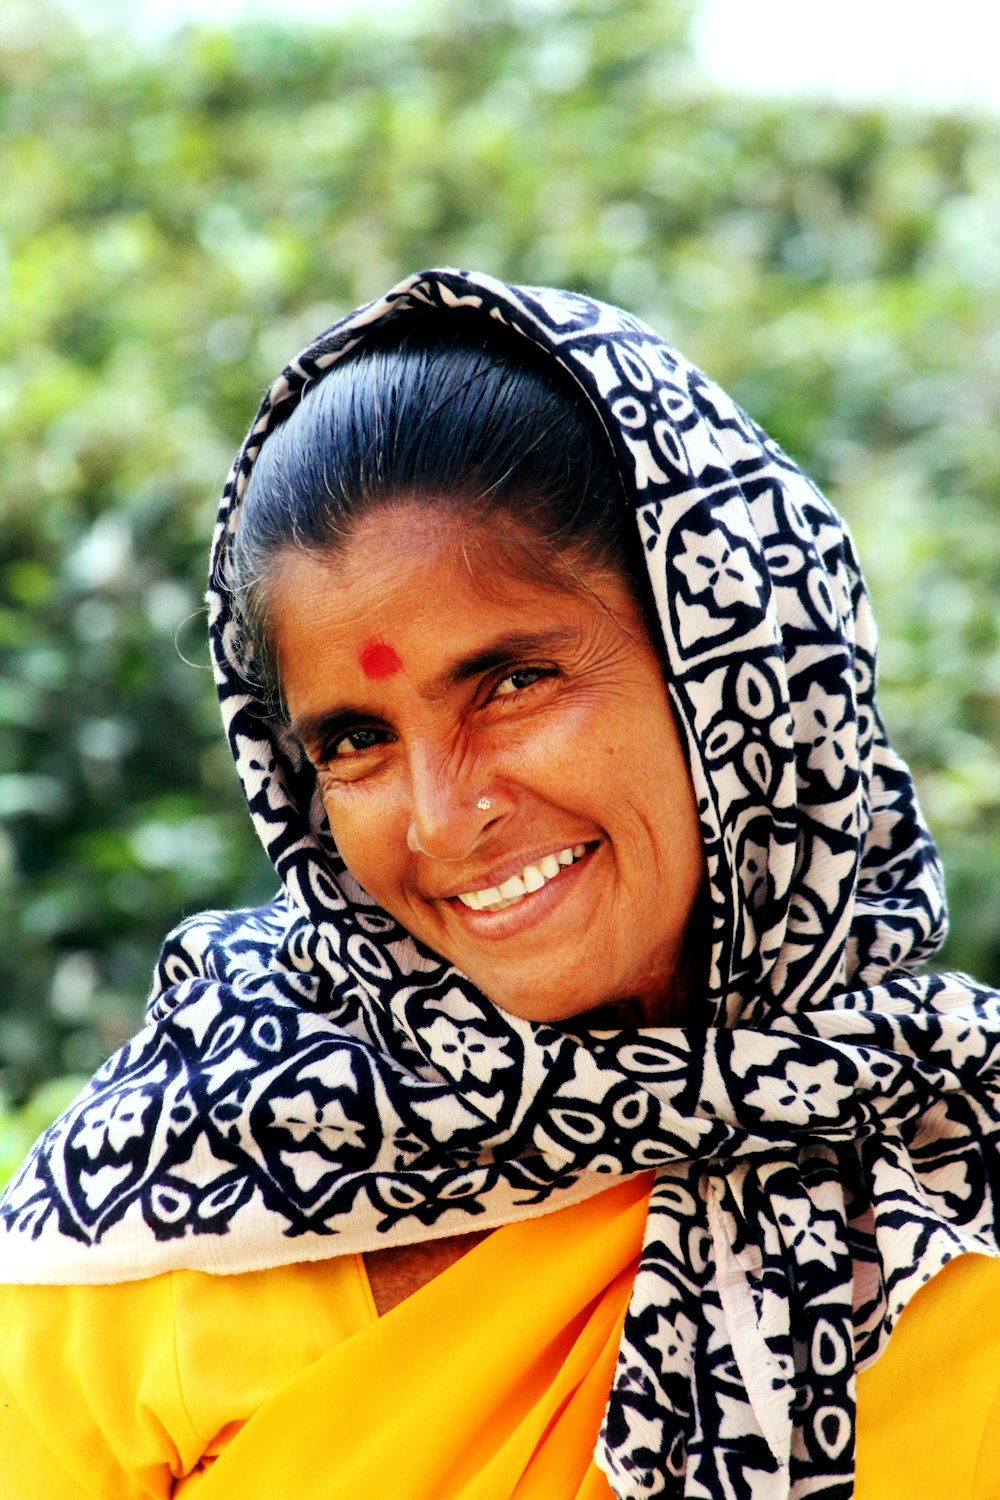 donna che indossa sciarpa floreale bianca e nera mentre sorride